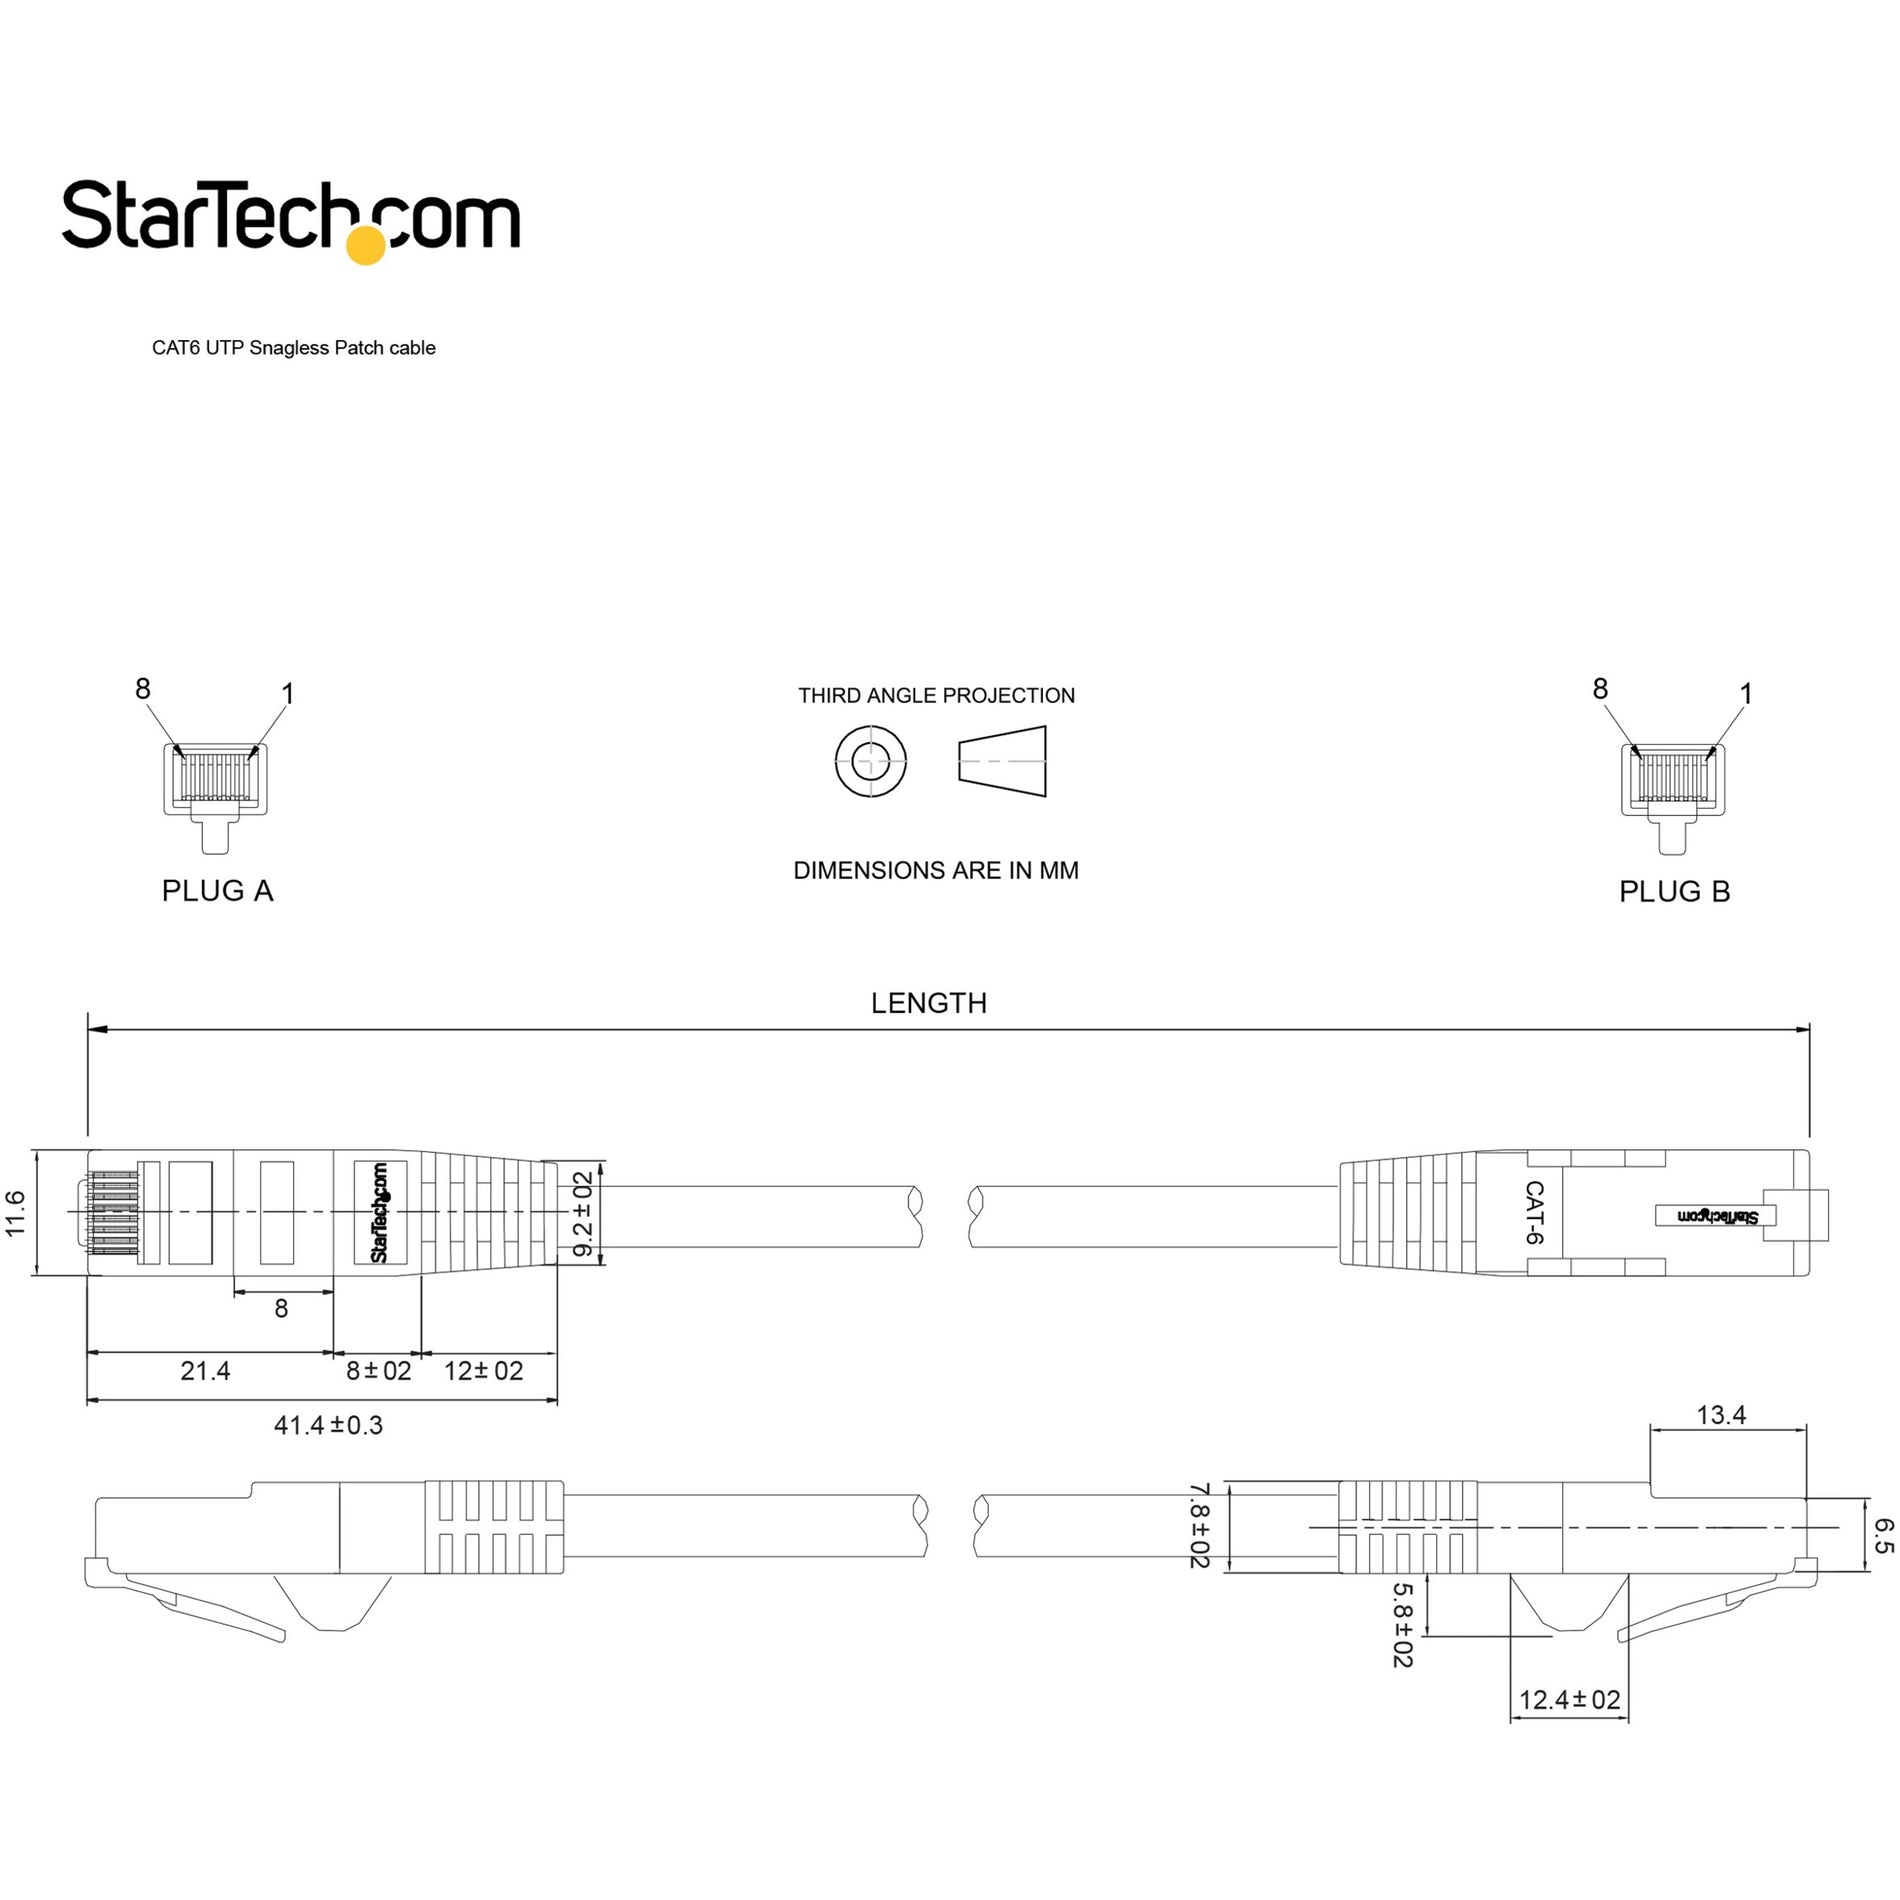 شبكة البيانات كات. 6 مصنوعة من StarTech.com، كابل إيثرنت رمادي طوله 20 قدم، موصلات RJ45 ضد الالتواء